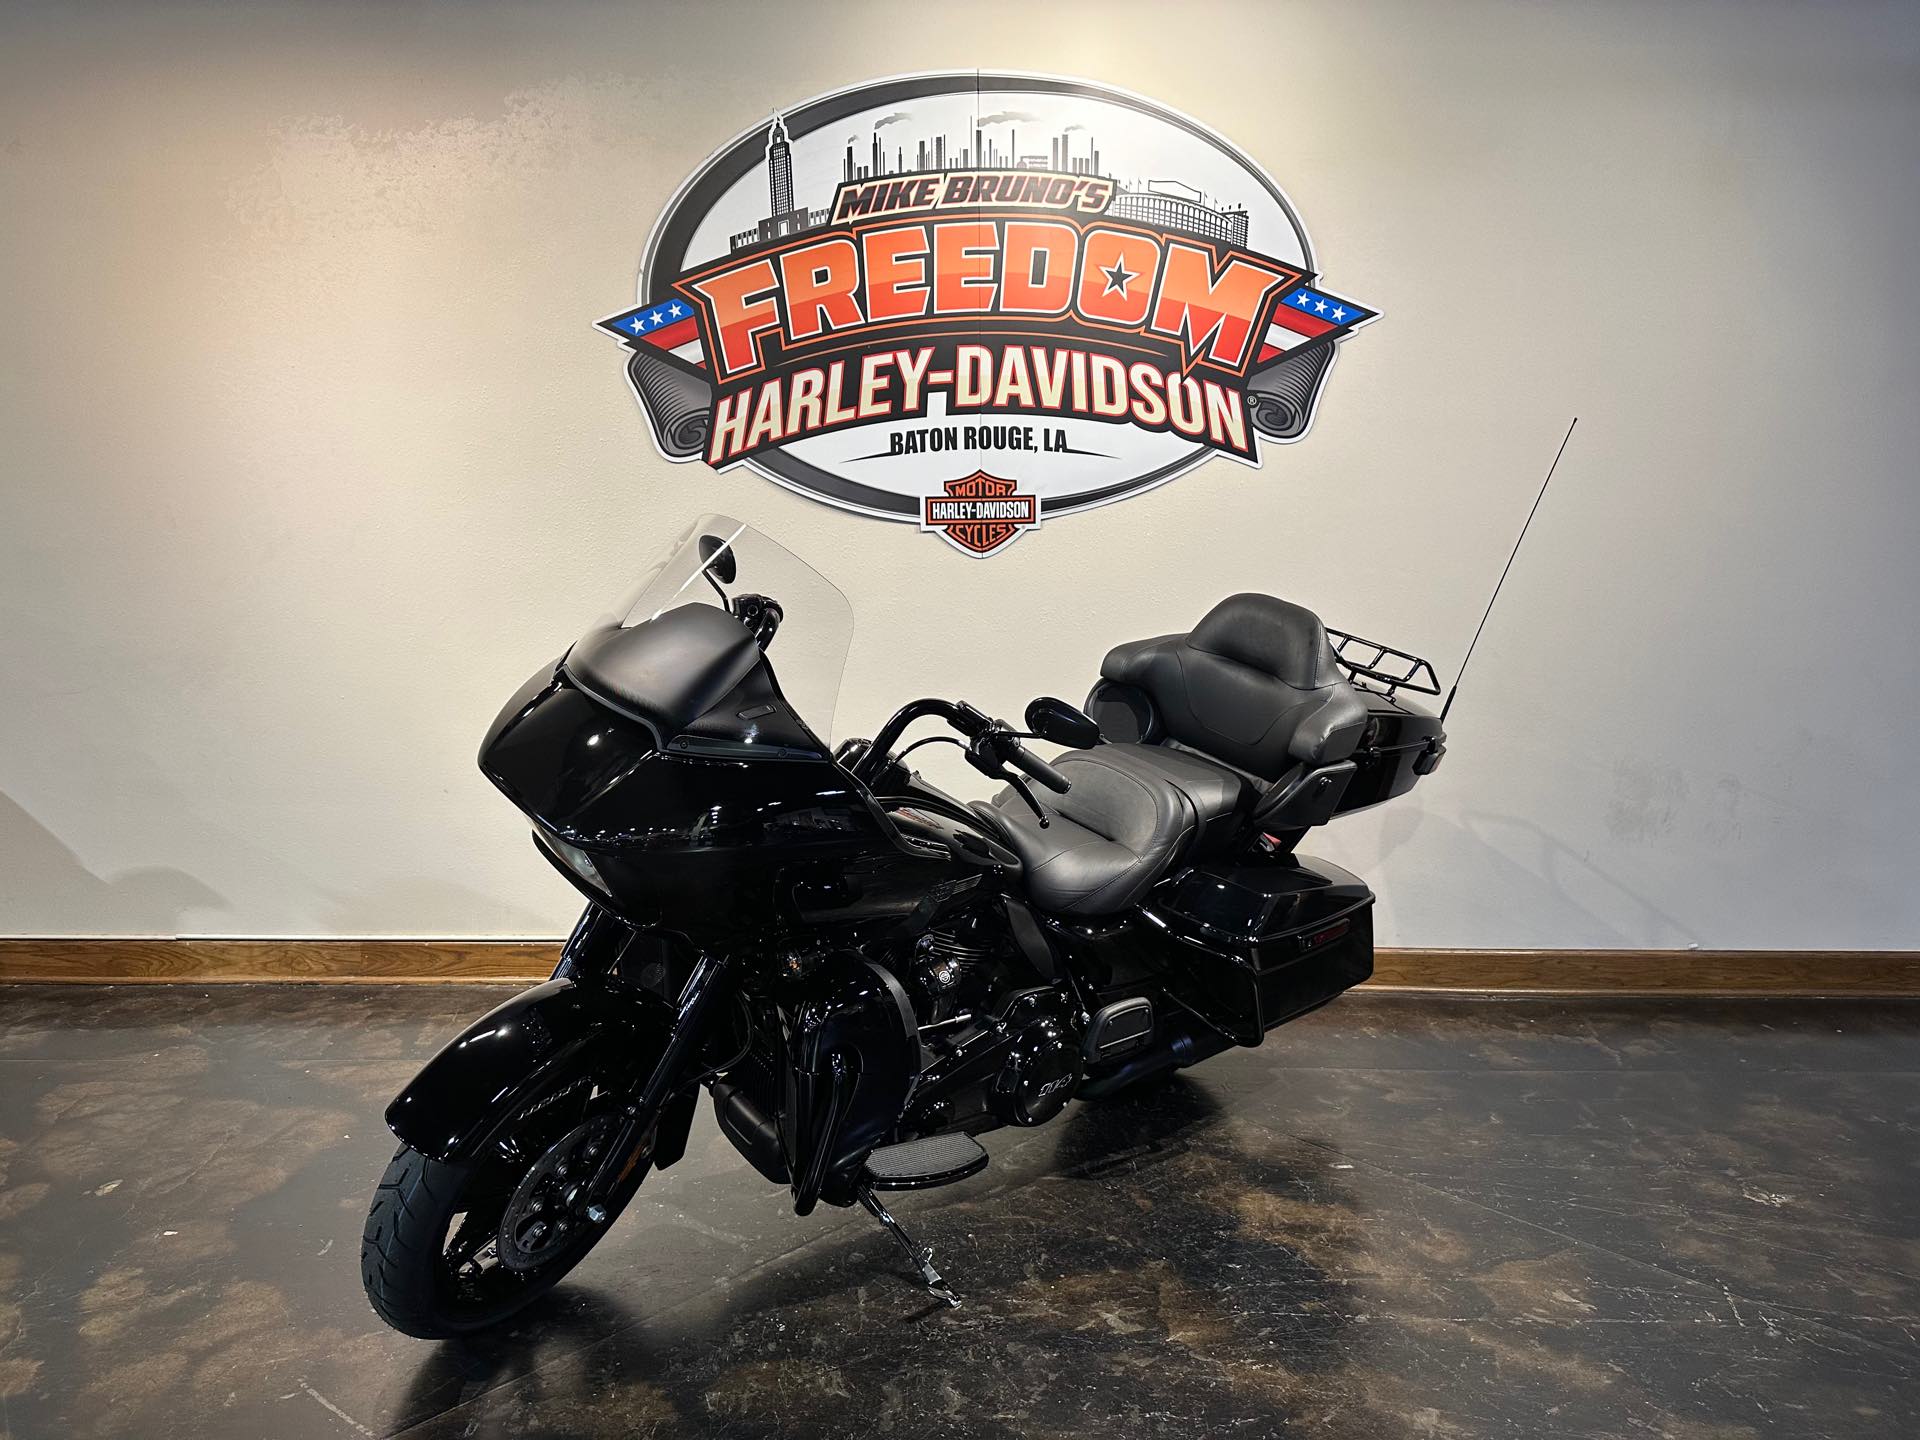 2024 Harley-Davidson Road Glide Limited at Mike Bruno's Freedom Harley-Davidson